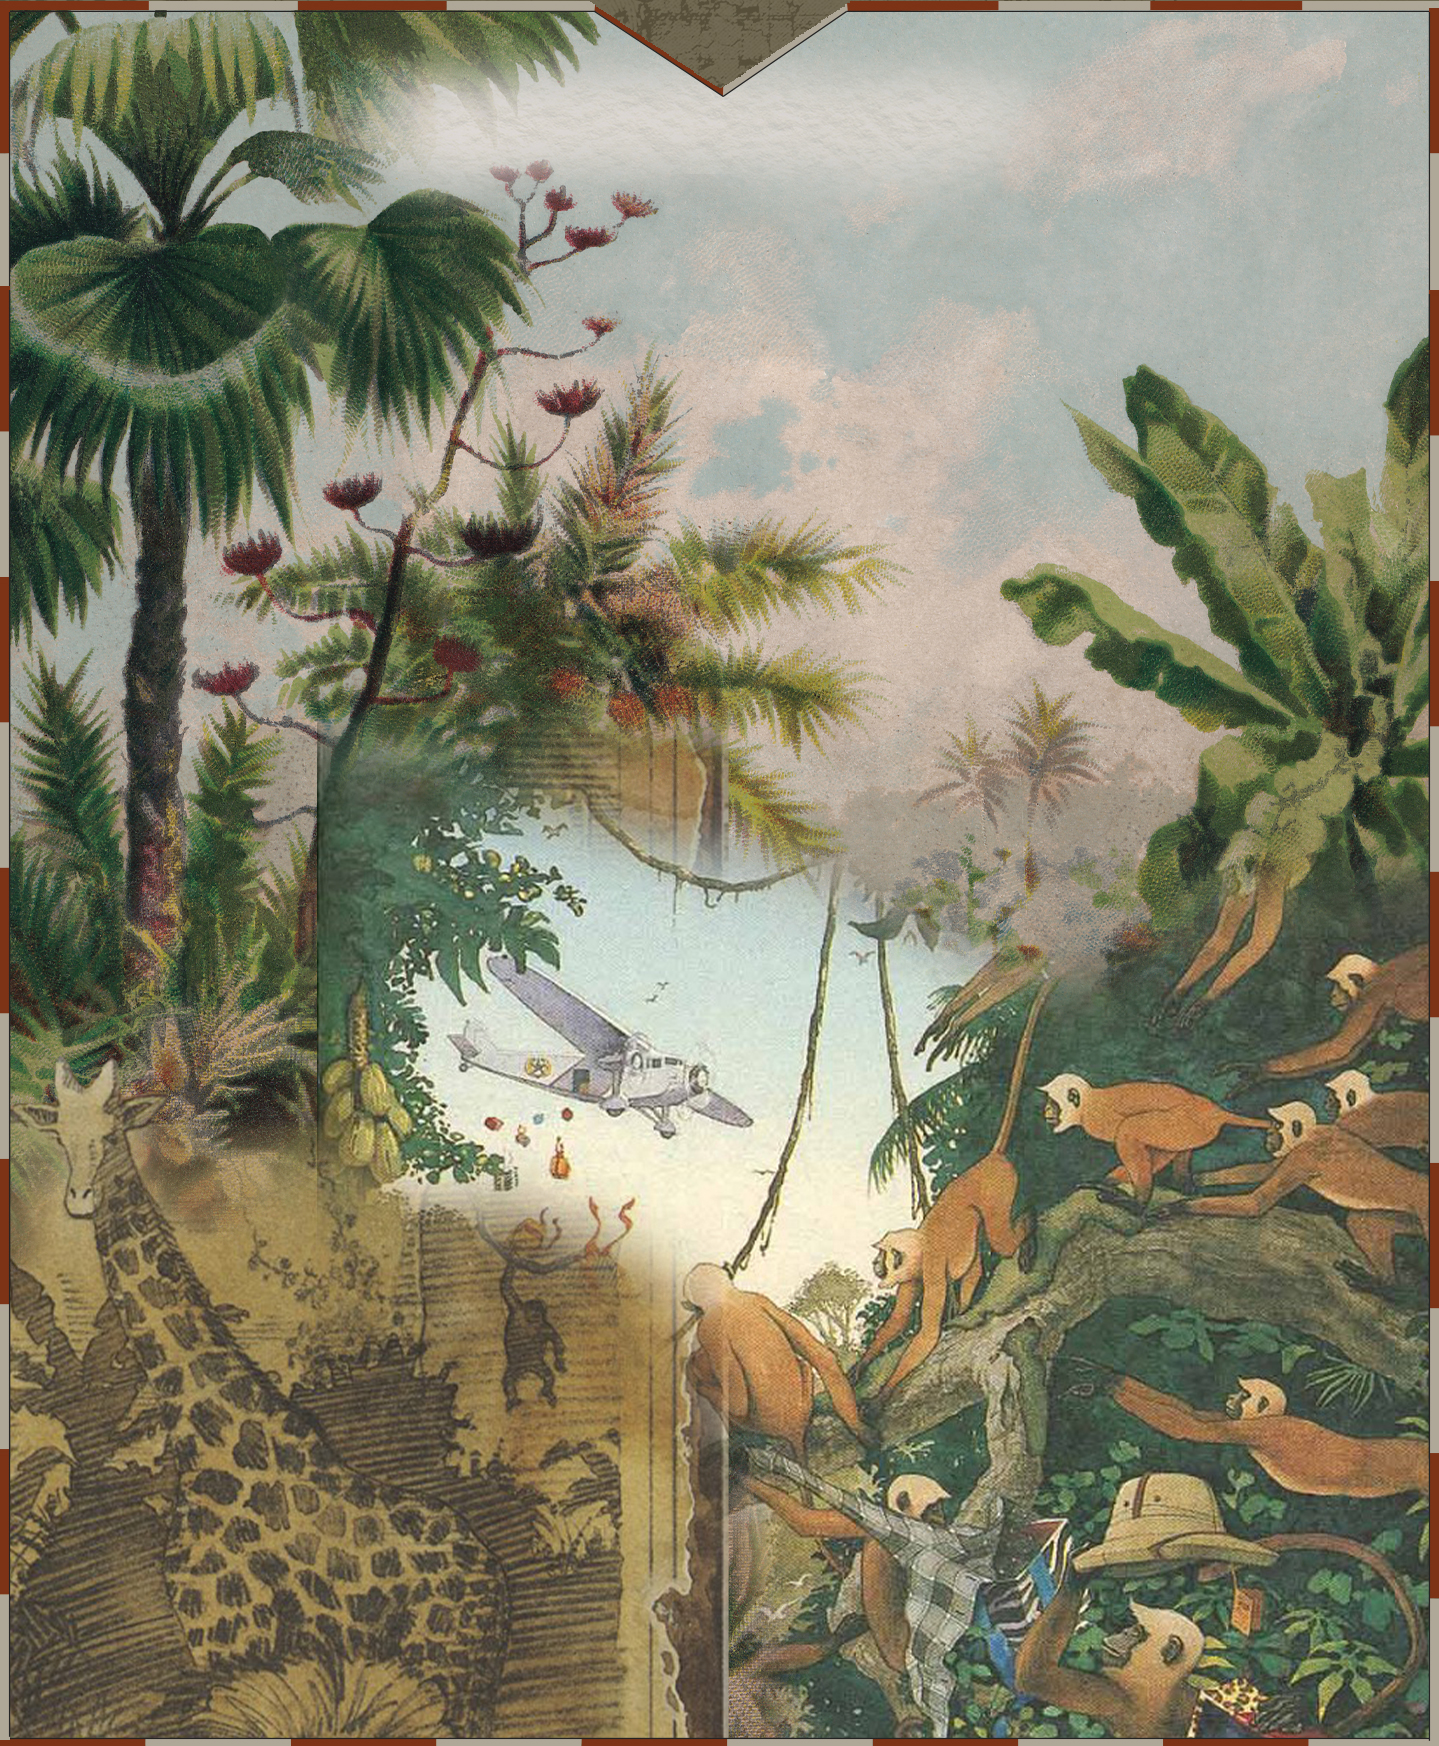 lush jungle with wildlife illustration background